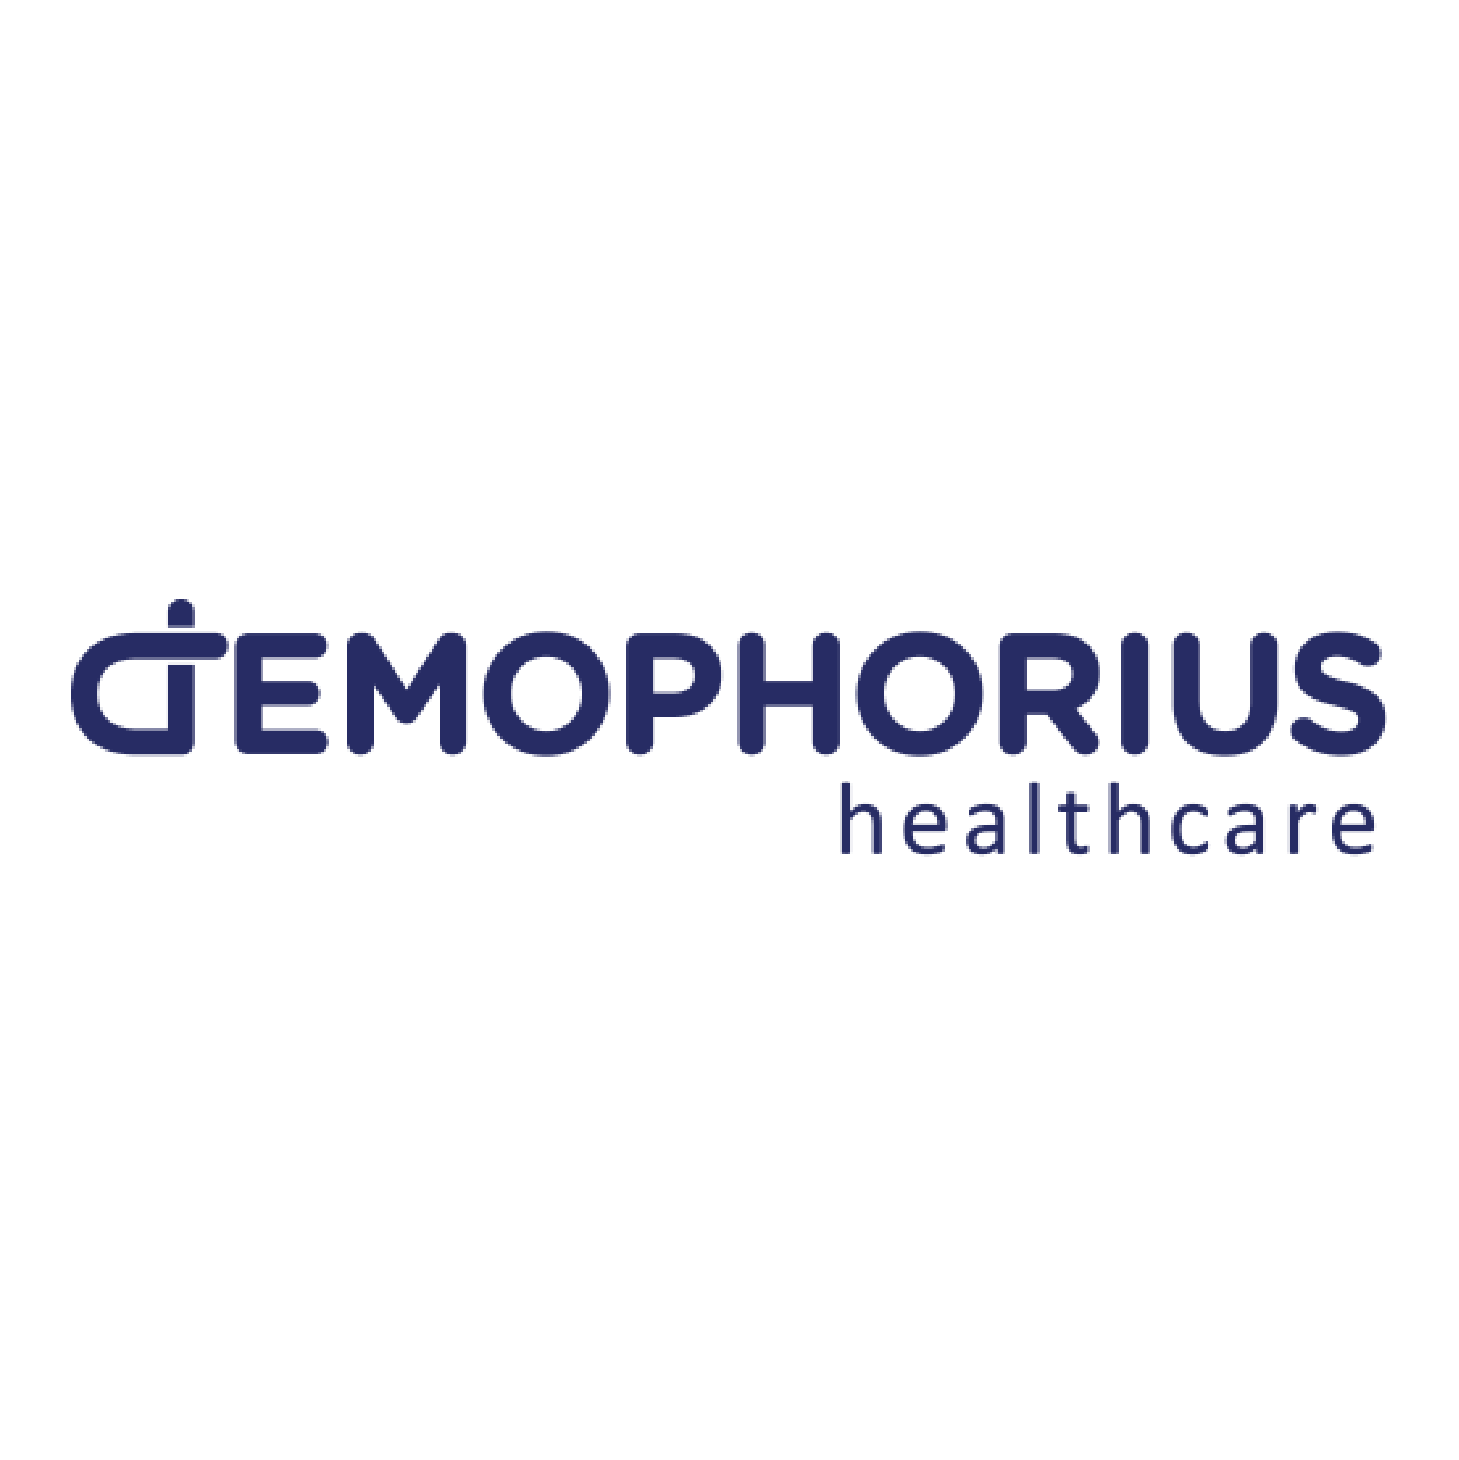 Demophorius Ltd